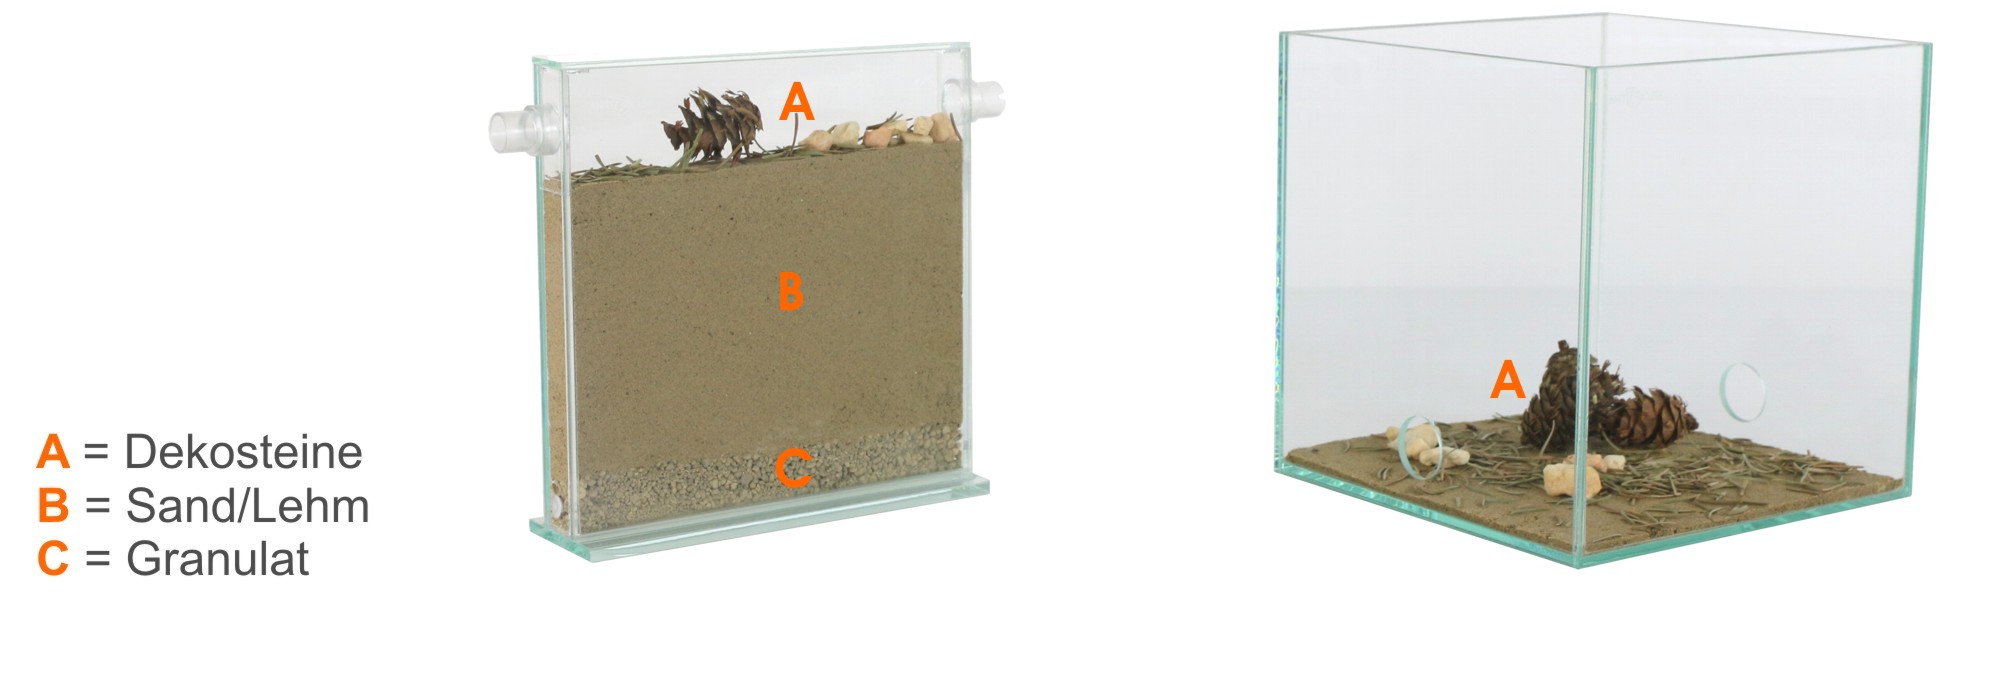 ANTSTORE - Ameisenshop - Ameisen kaufen - Bodengrund für Formicarien und  Terrarien